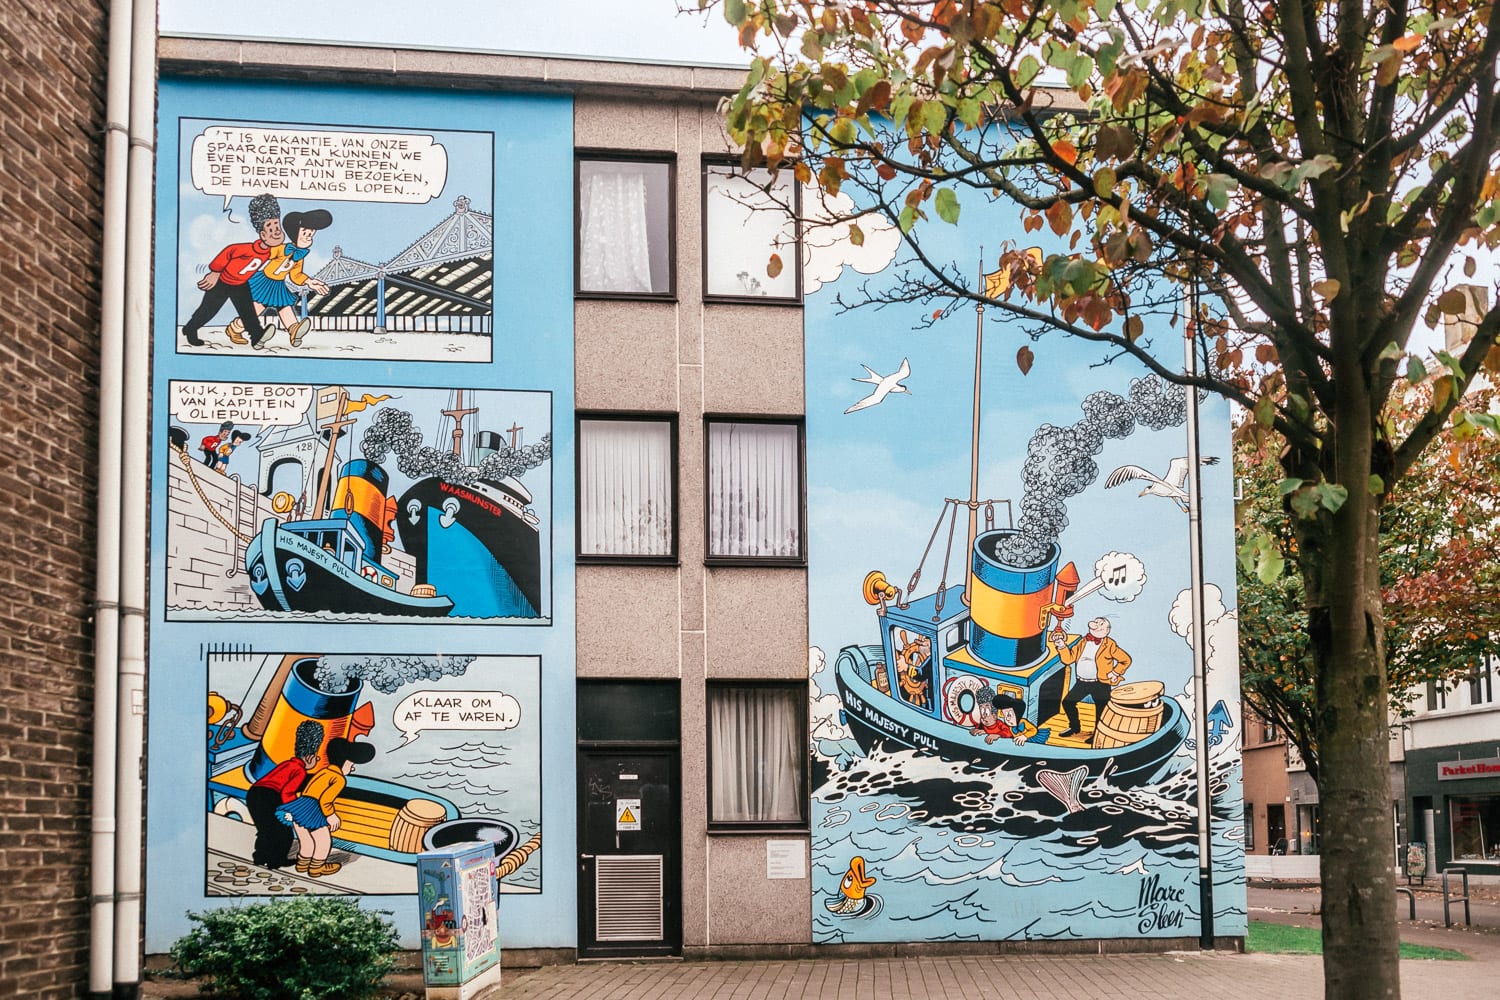 Nero - Street Art in Kloosterstraat, Antwerp, Belgium